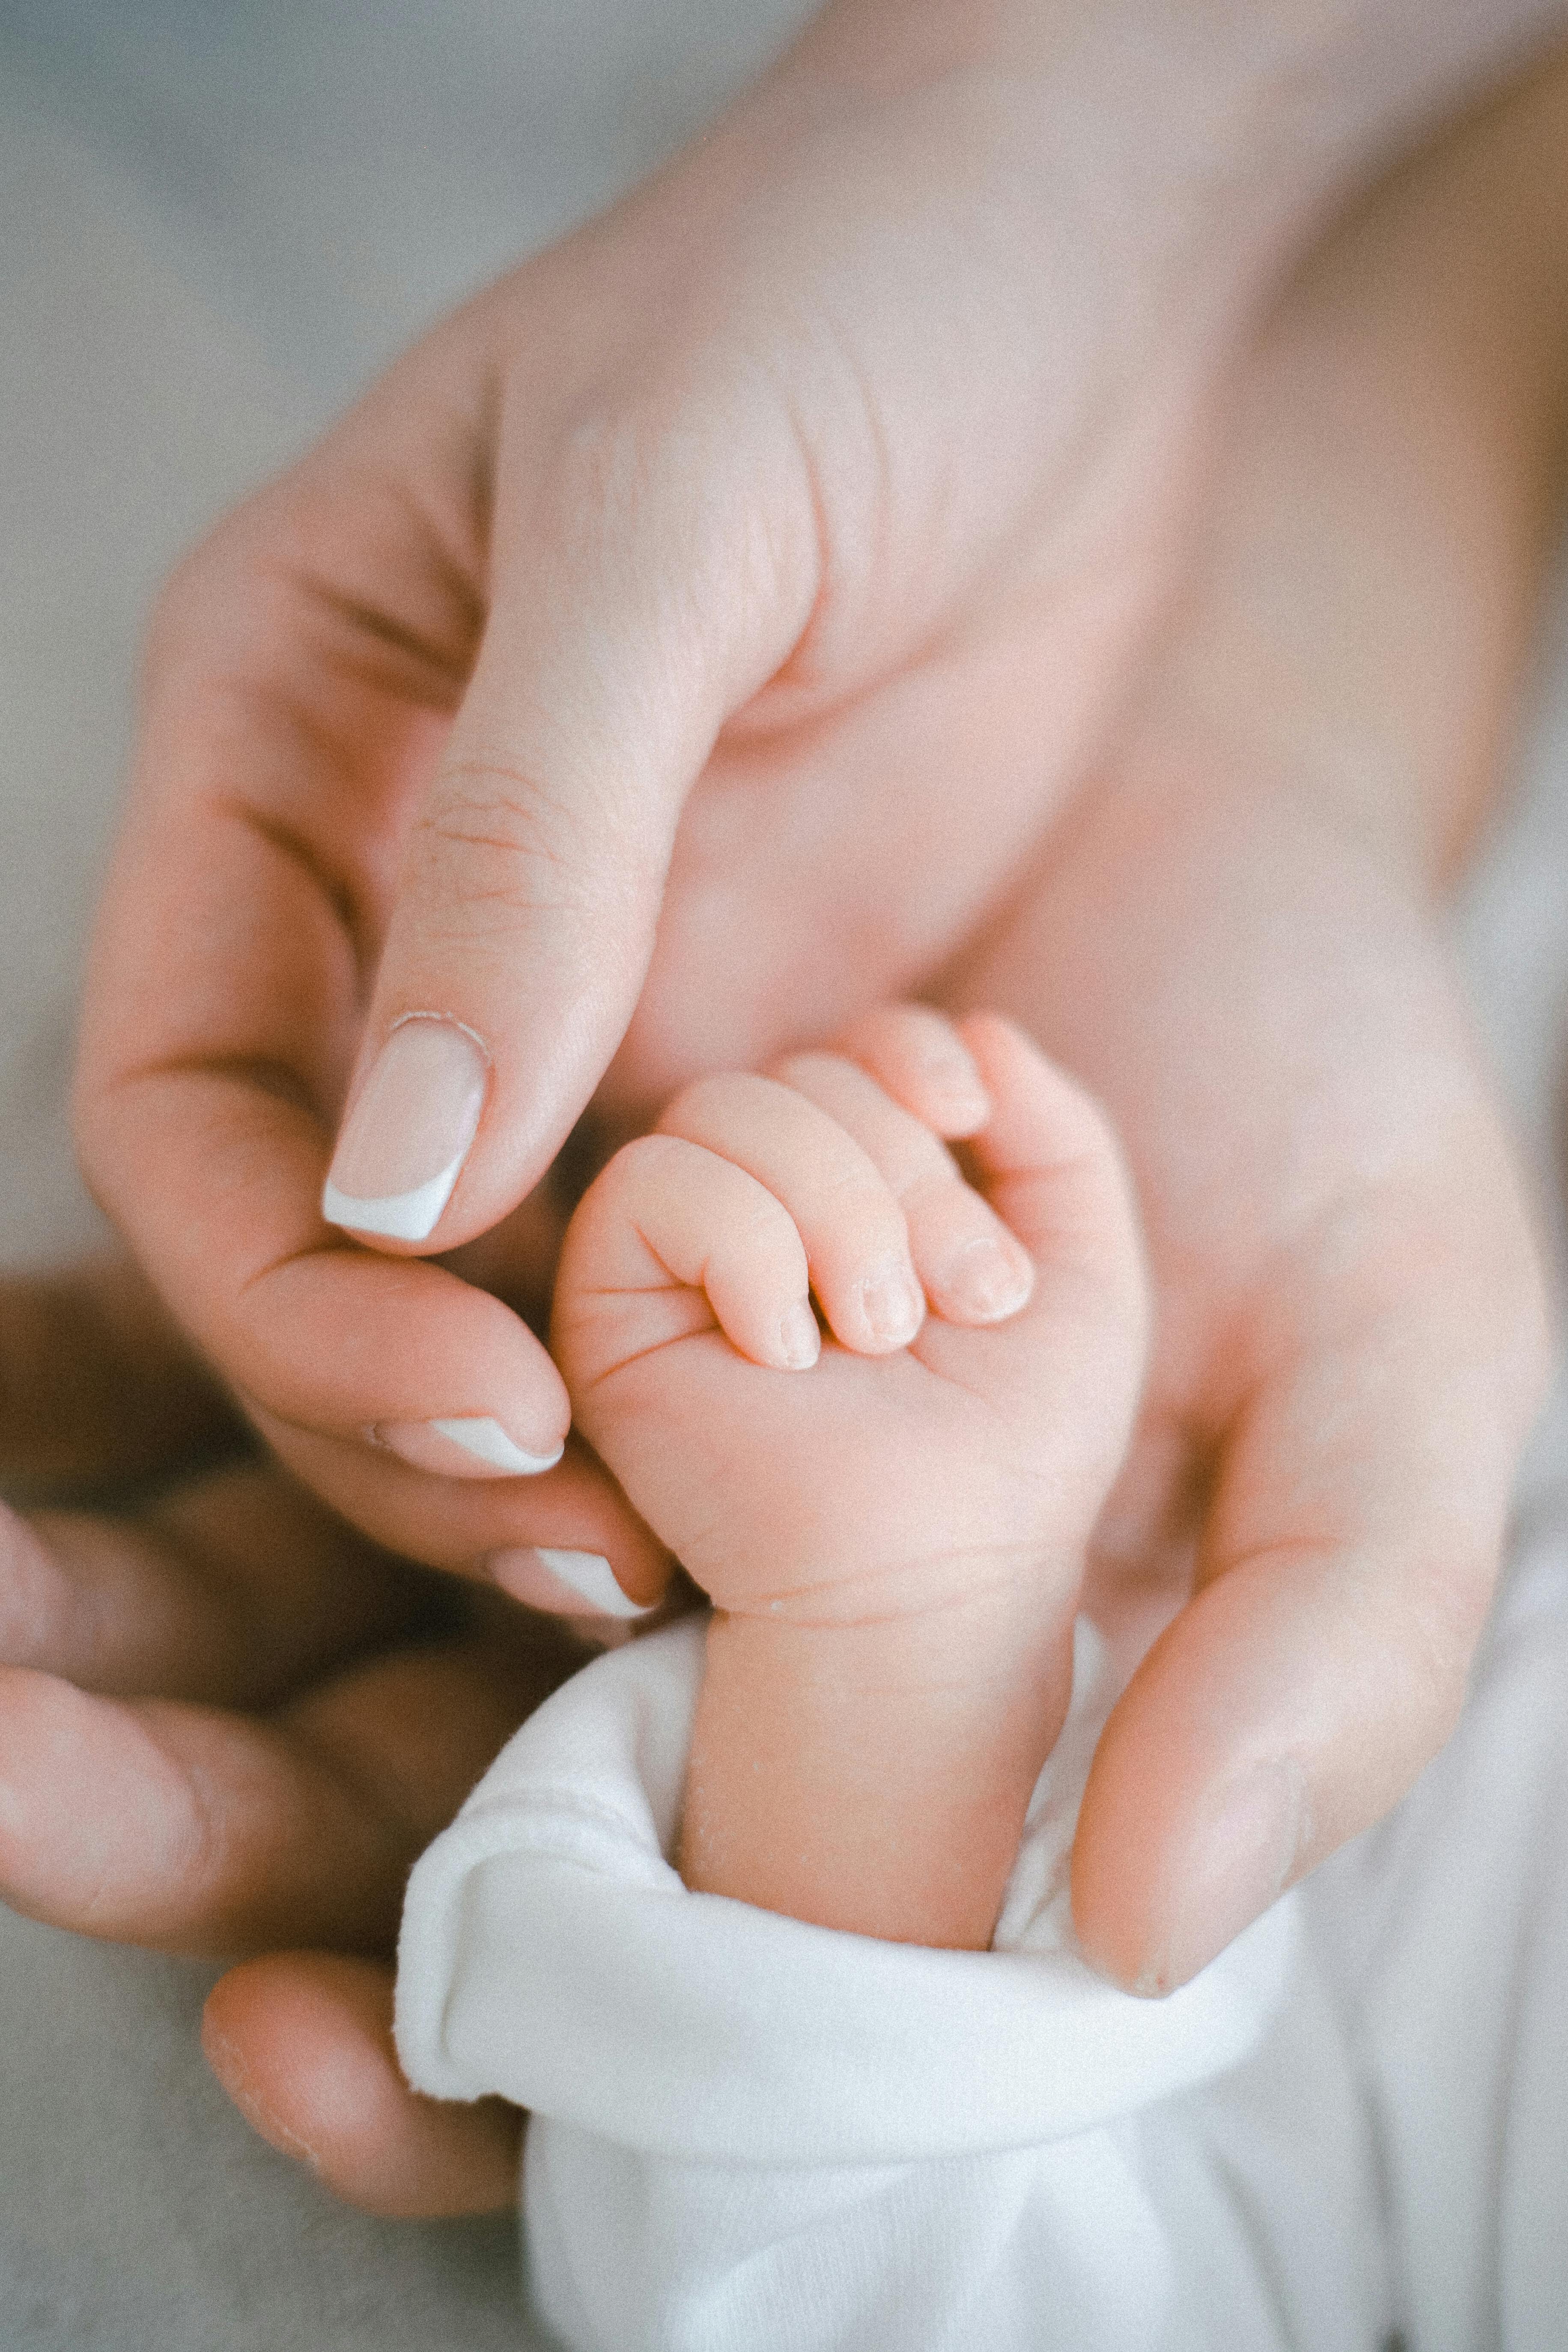 Die Hände der Eltern, die ihr Kind halten | Quelle: Pexels